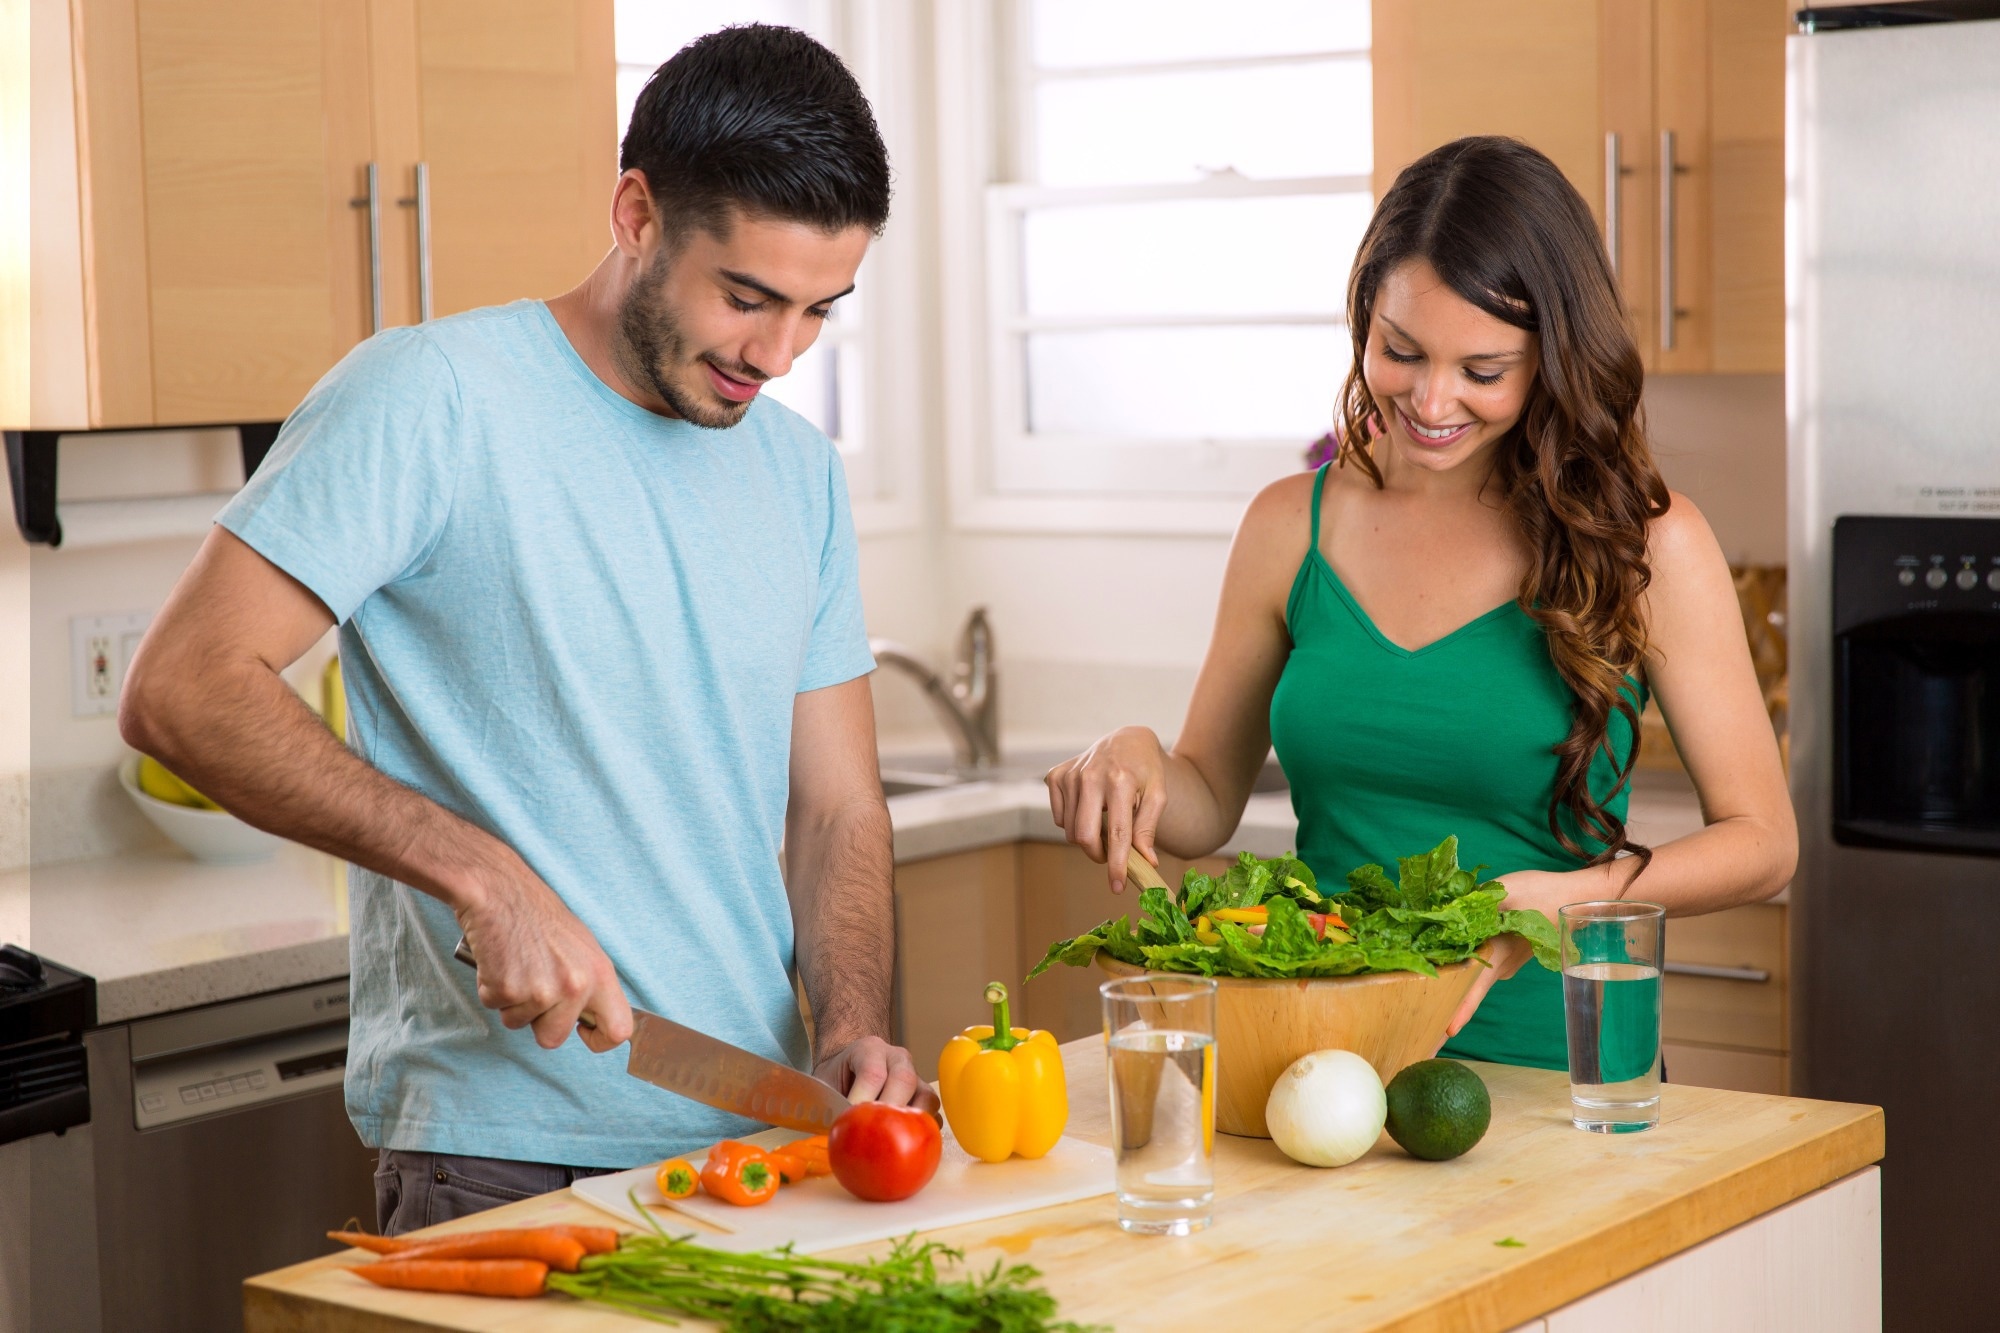 Un estudio sugiere que los hábitos alimentarios de la pareja influyen en el aumento de peso durante el embarazo